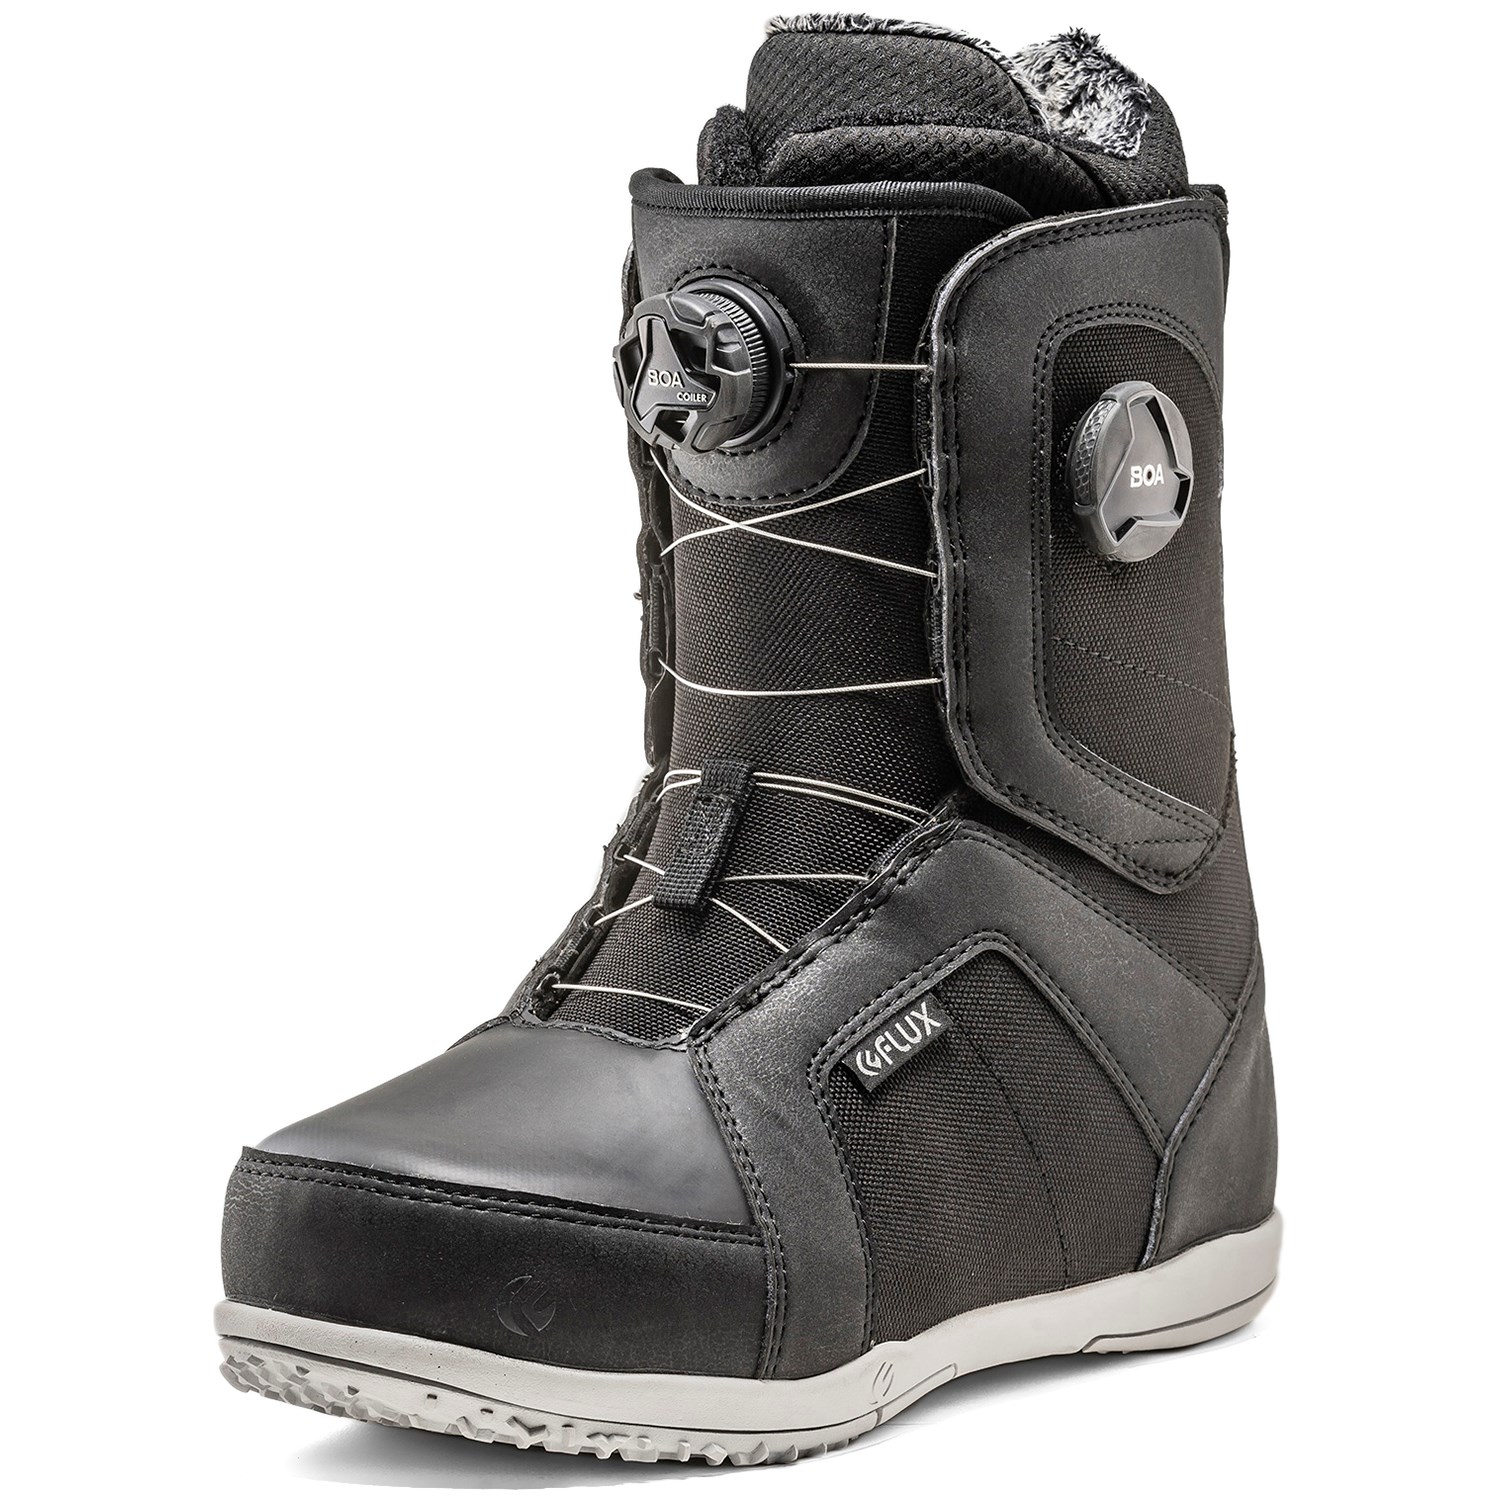 Flux TX Boa Snowboard Boots 2020 | evo